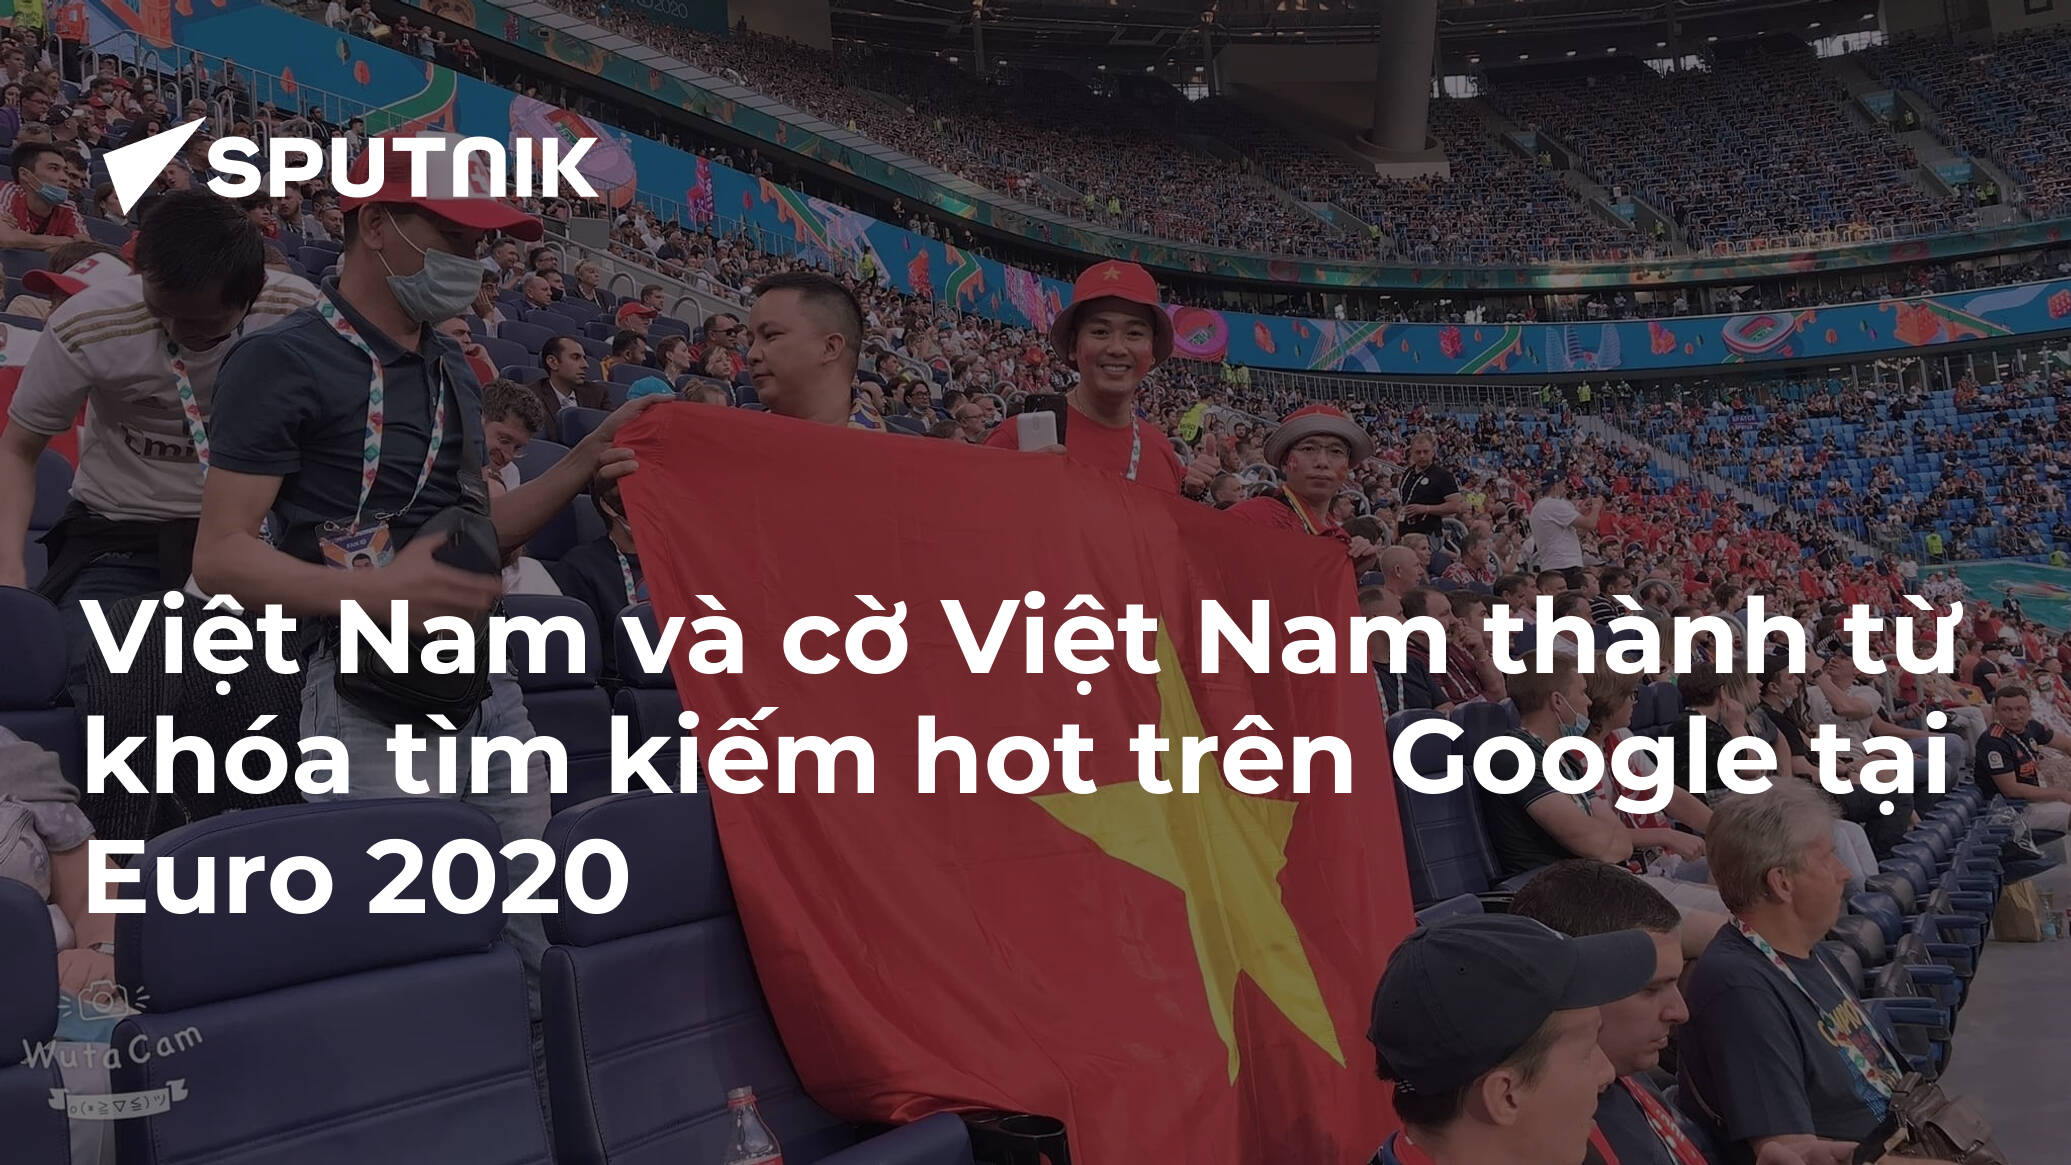 Mercedes-Benz Việt Nam đã tự tin cổ vũ Đức tại Euro 2016 bằng những chiếc xe sang trọng. Bộ ảnh này đã giữ lại lại những khoảnh khắc đậm chất thể thao với những quả bóng, cờ đỏ sao vàng được diễn tả rõ nét tại những khu vực tráng lệ. Hãy cùng chiêm ngưỡng những hình ảnh đầy cuốn hút này.